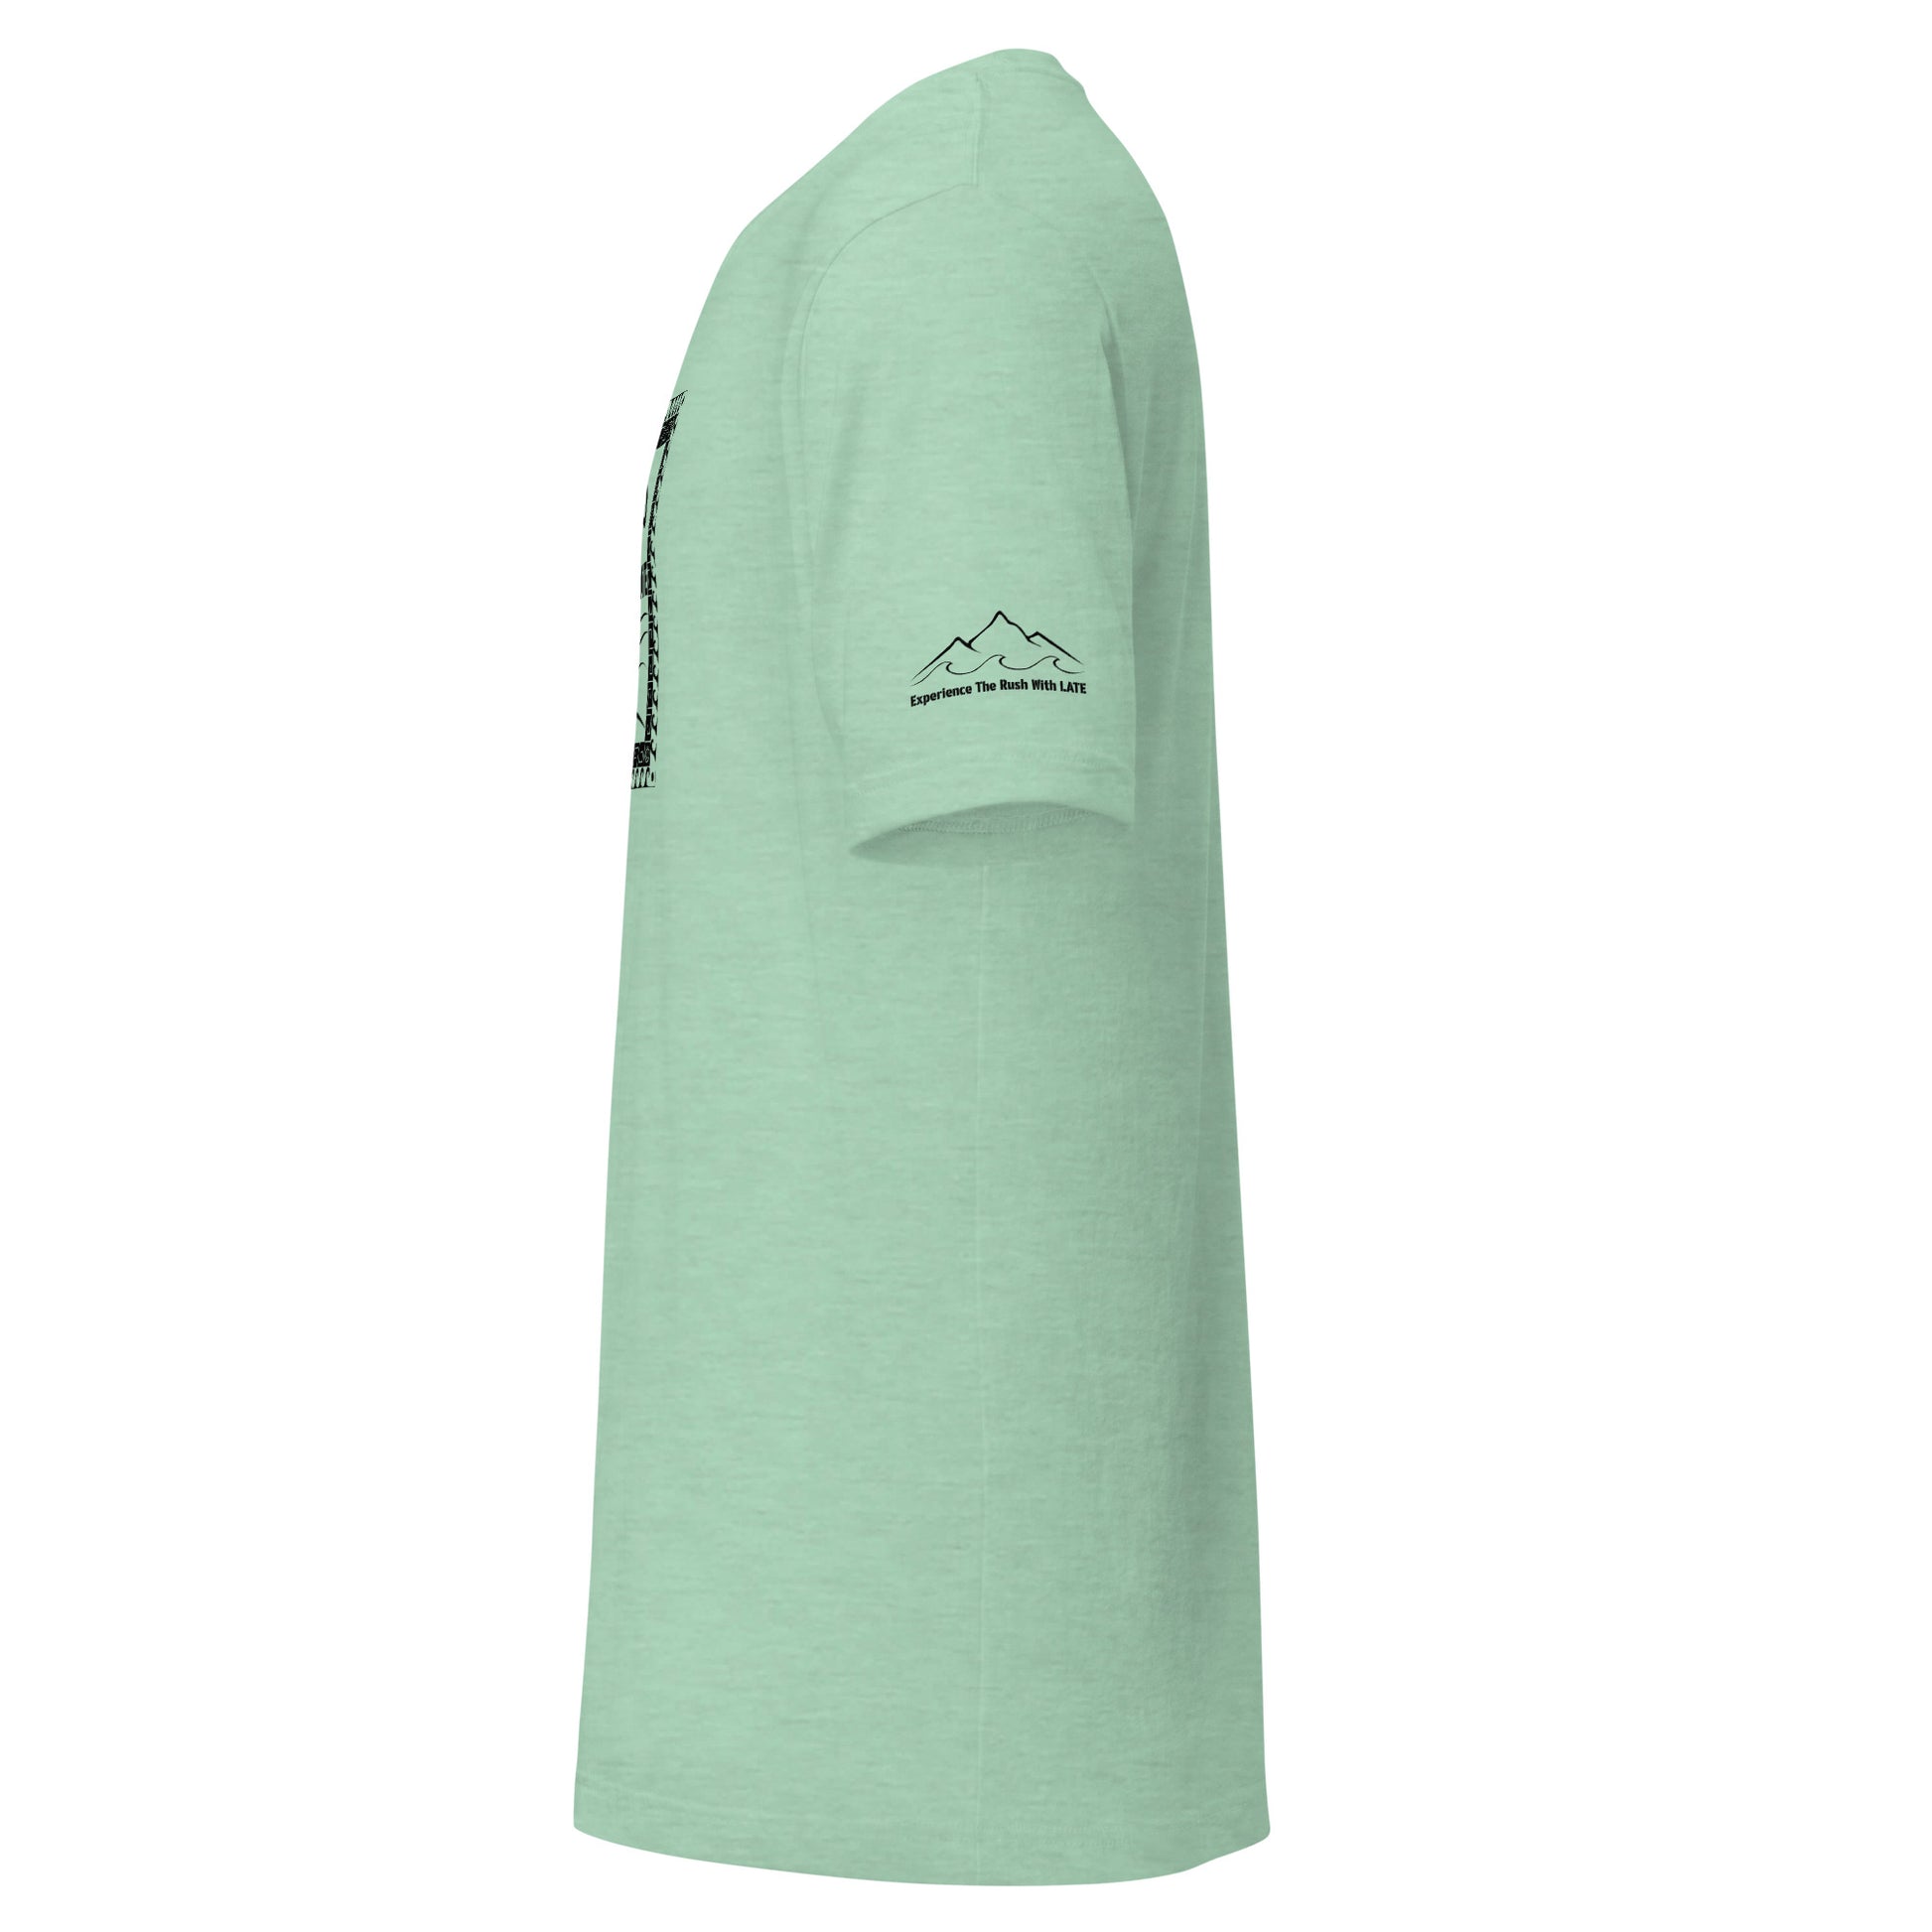 T-Shirt Tricky Wave design manche montagne et vague texte experience the rush et logo Late marque de vêtement de surf skate snowboard tshirt vert menthe